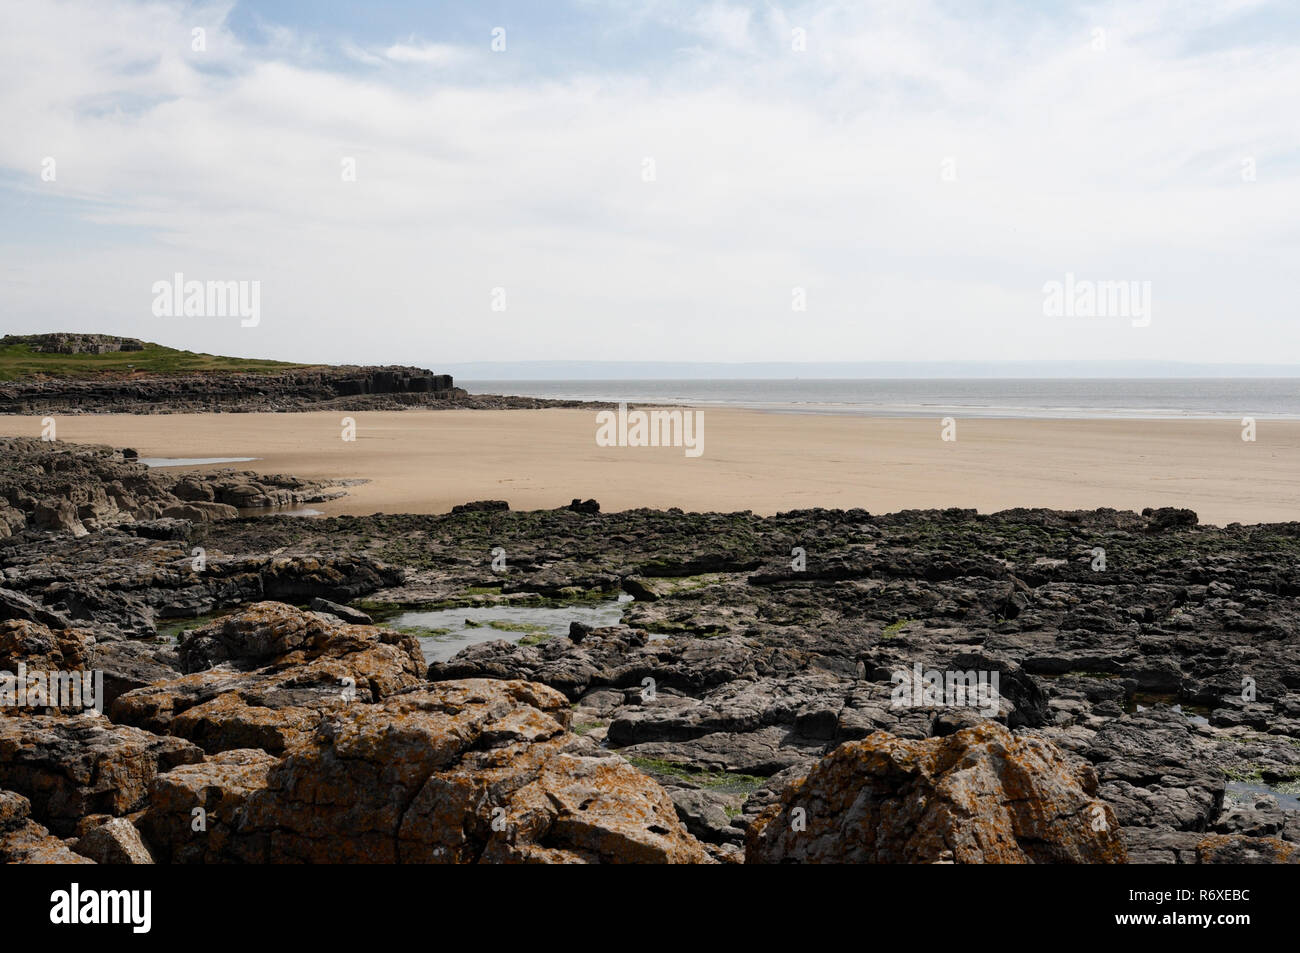 Rocce costiere a Rest Bay Porthcawl Wales UK, costa gallese, costa, costa britannica litorale spiaggia tranquilla e vuota Vista panoramica della spiaggia e del cielo Foto Stock